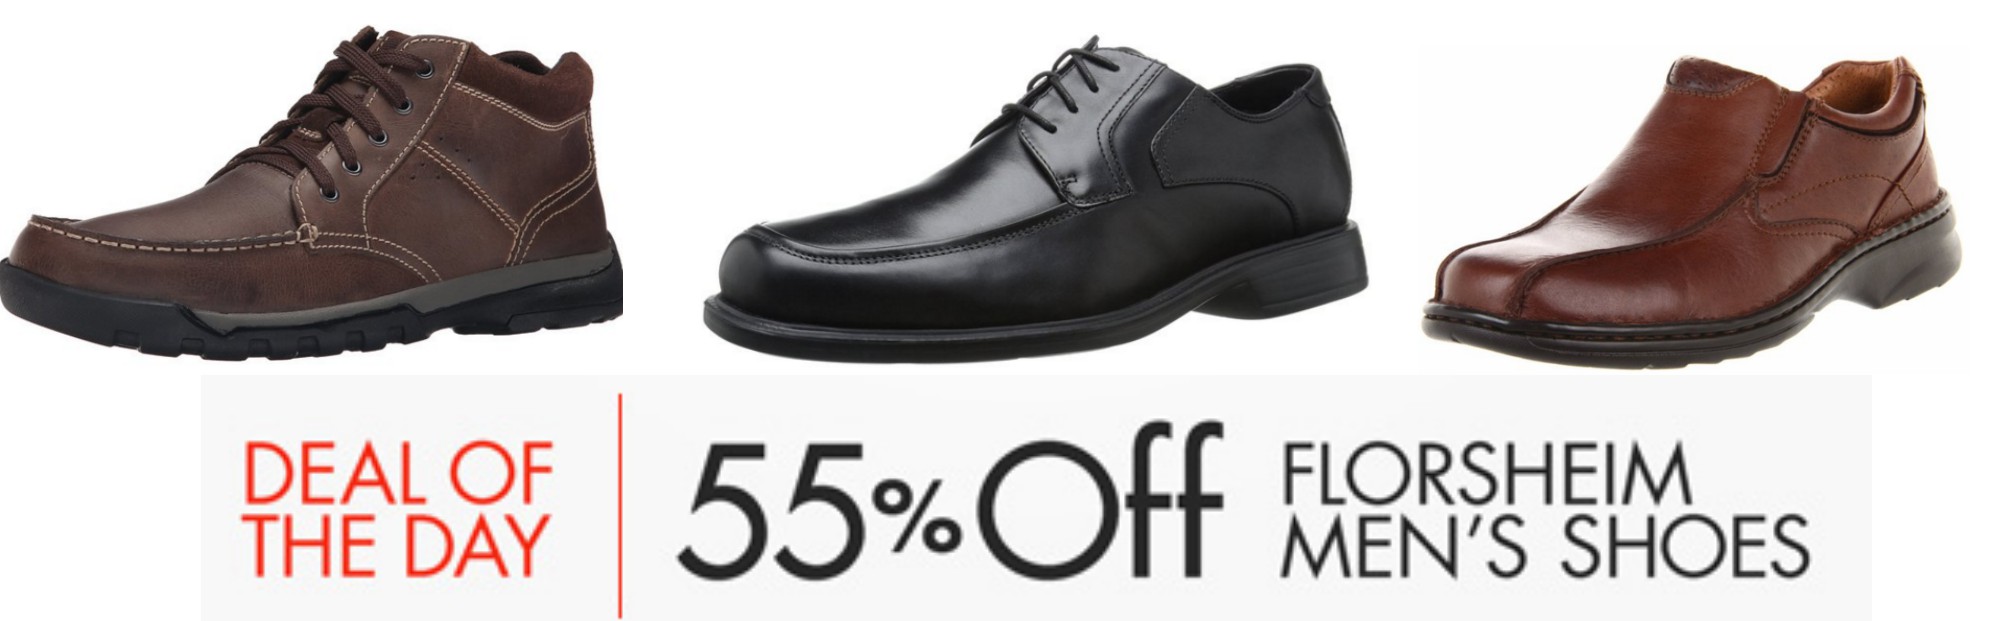 Amazon: 55% Off Florsheim Men's Shoes 